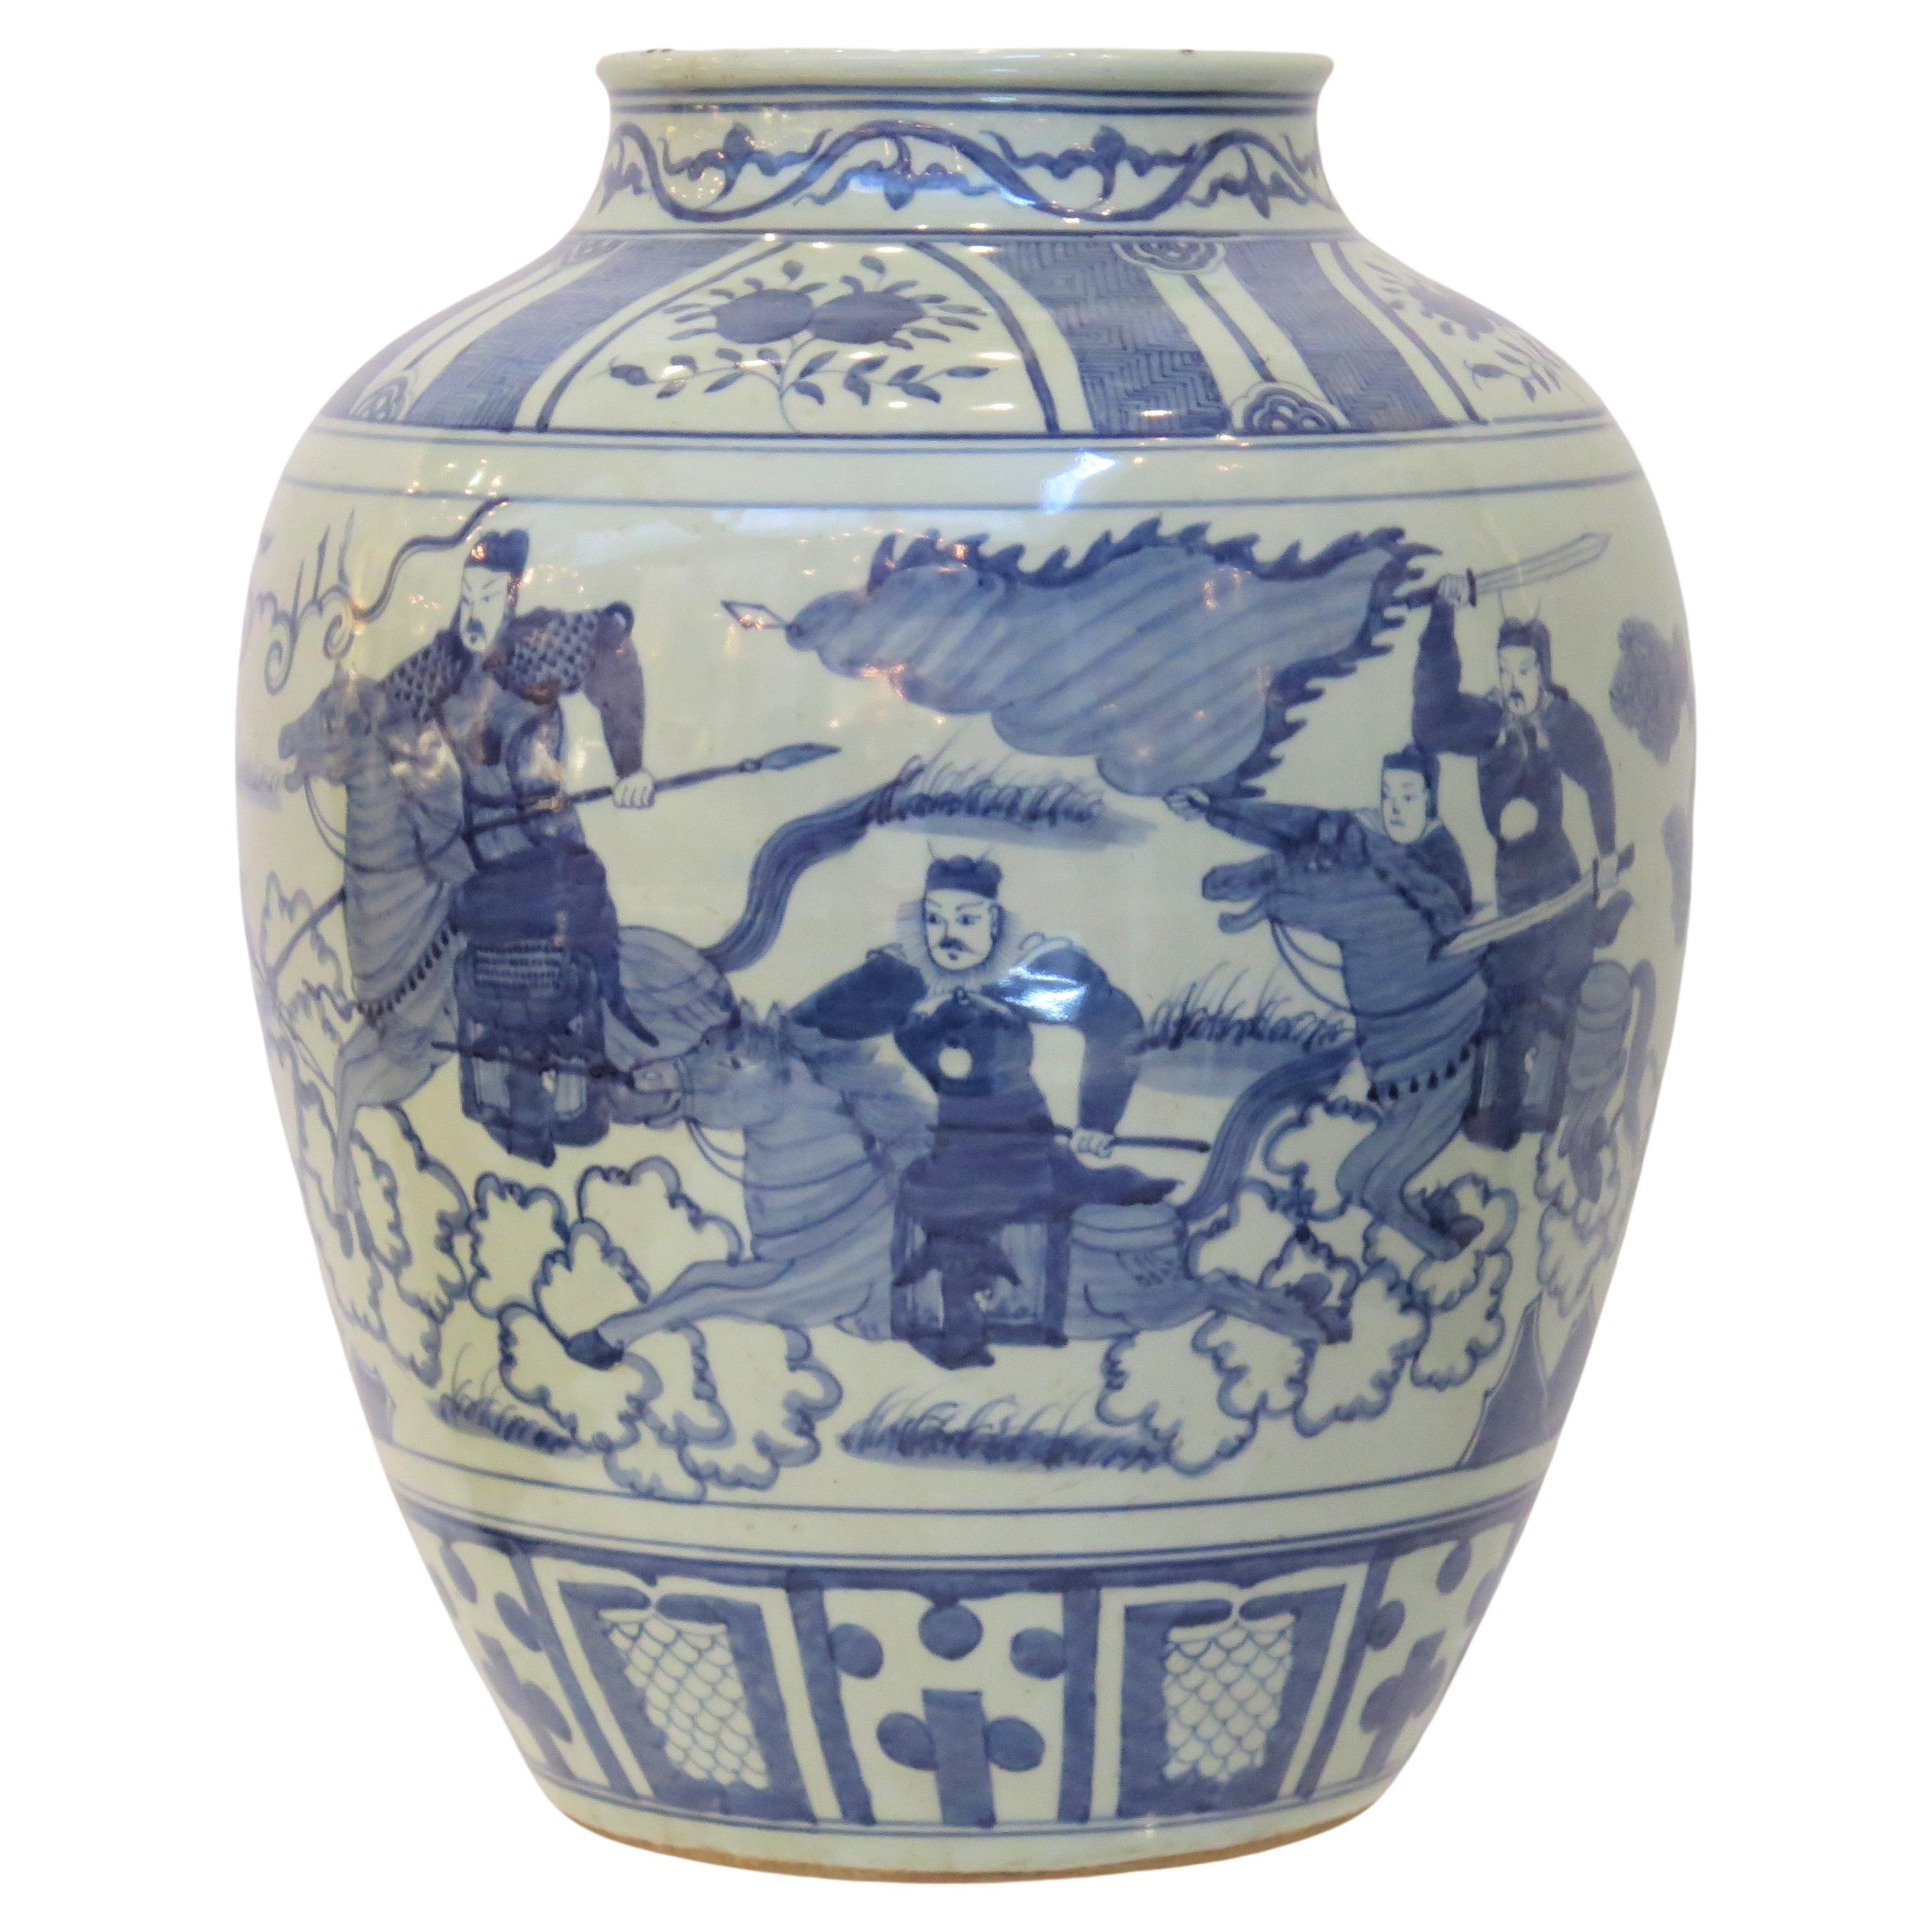 Une jarre chinoise bleue et blanche du 19ème siècle